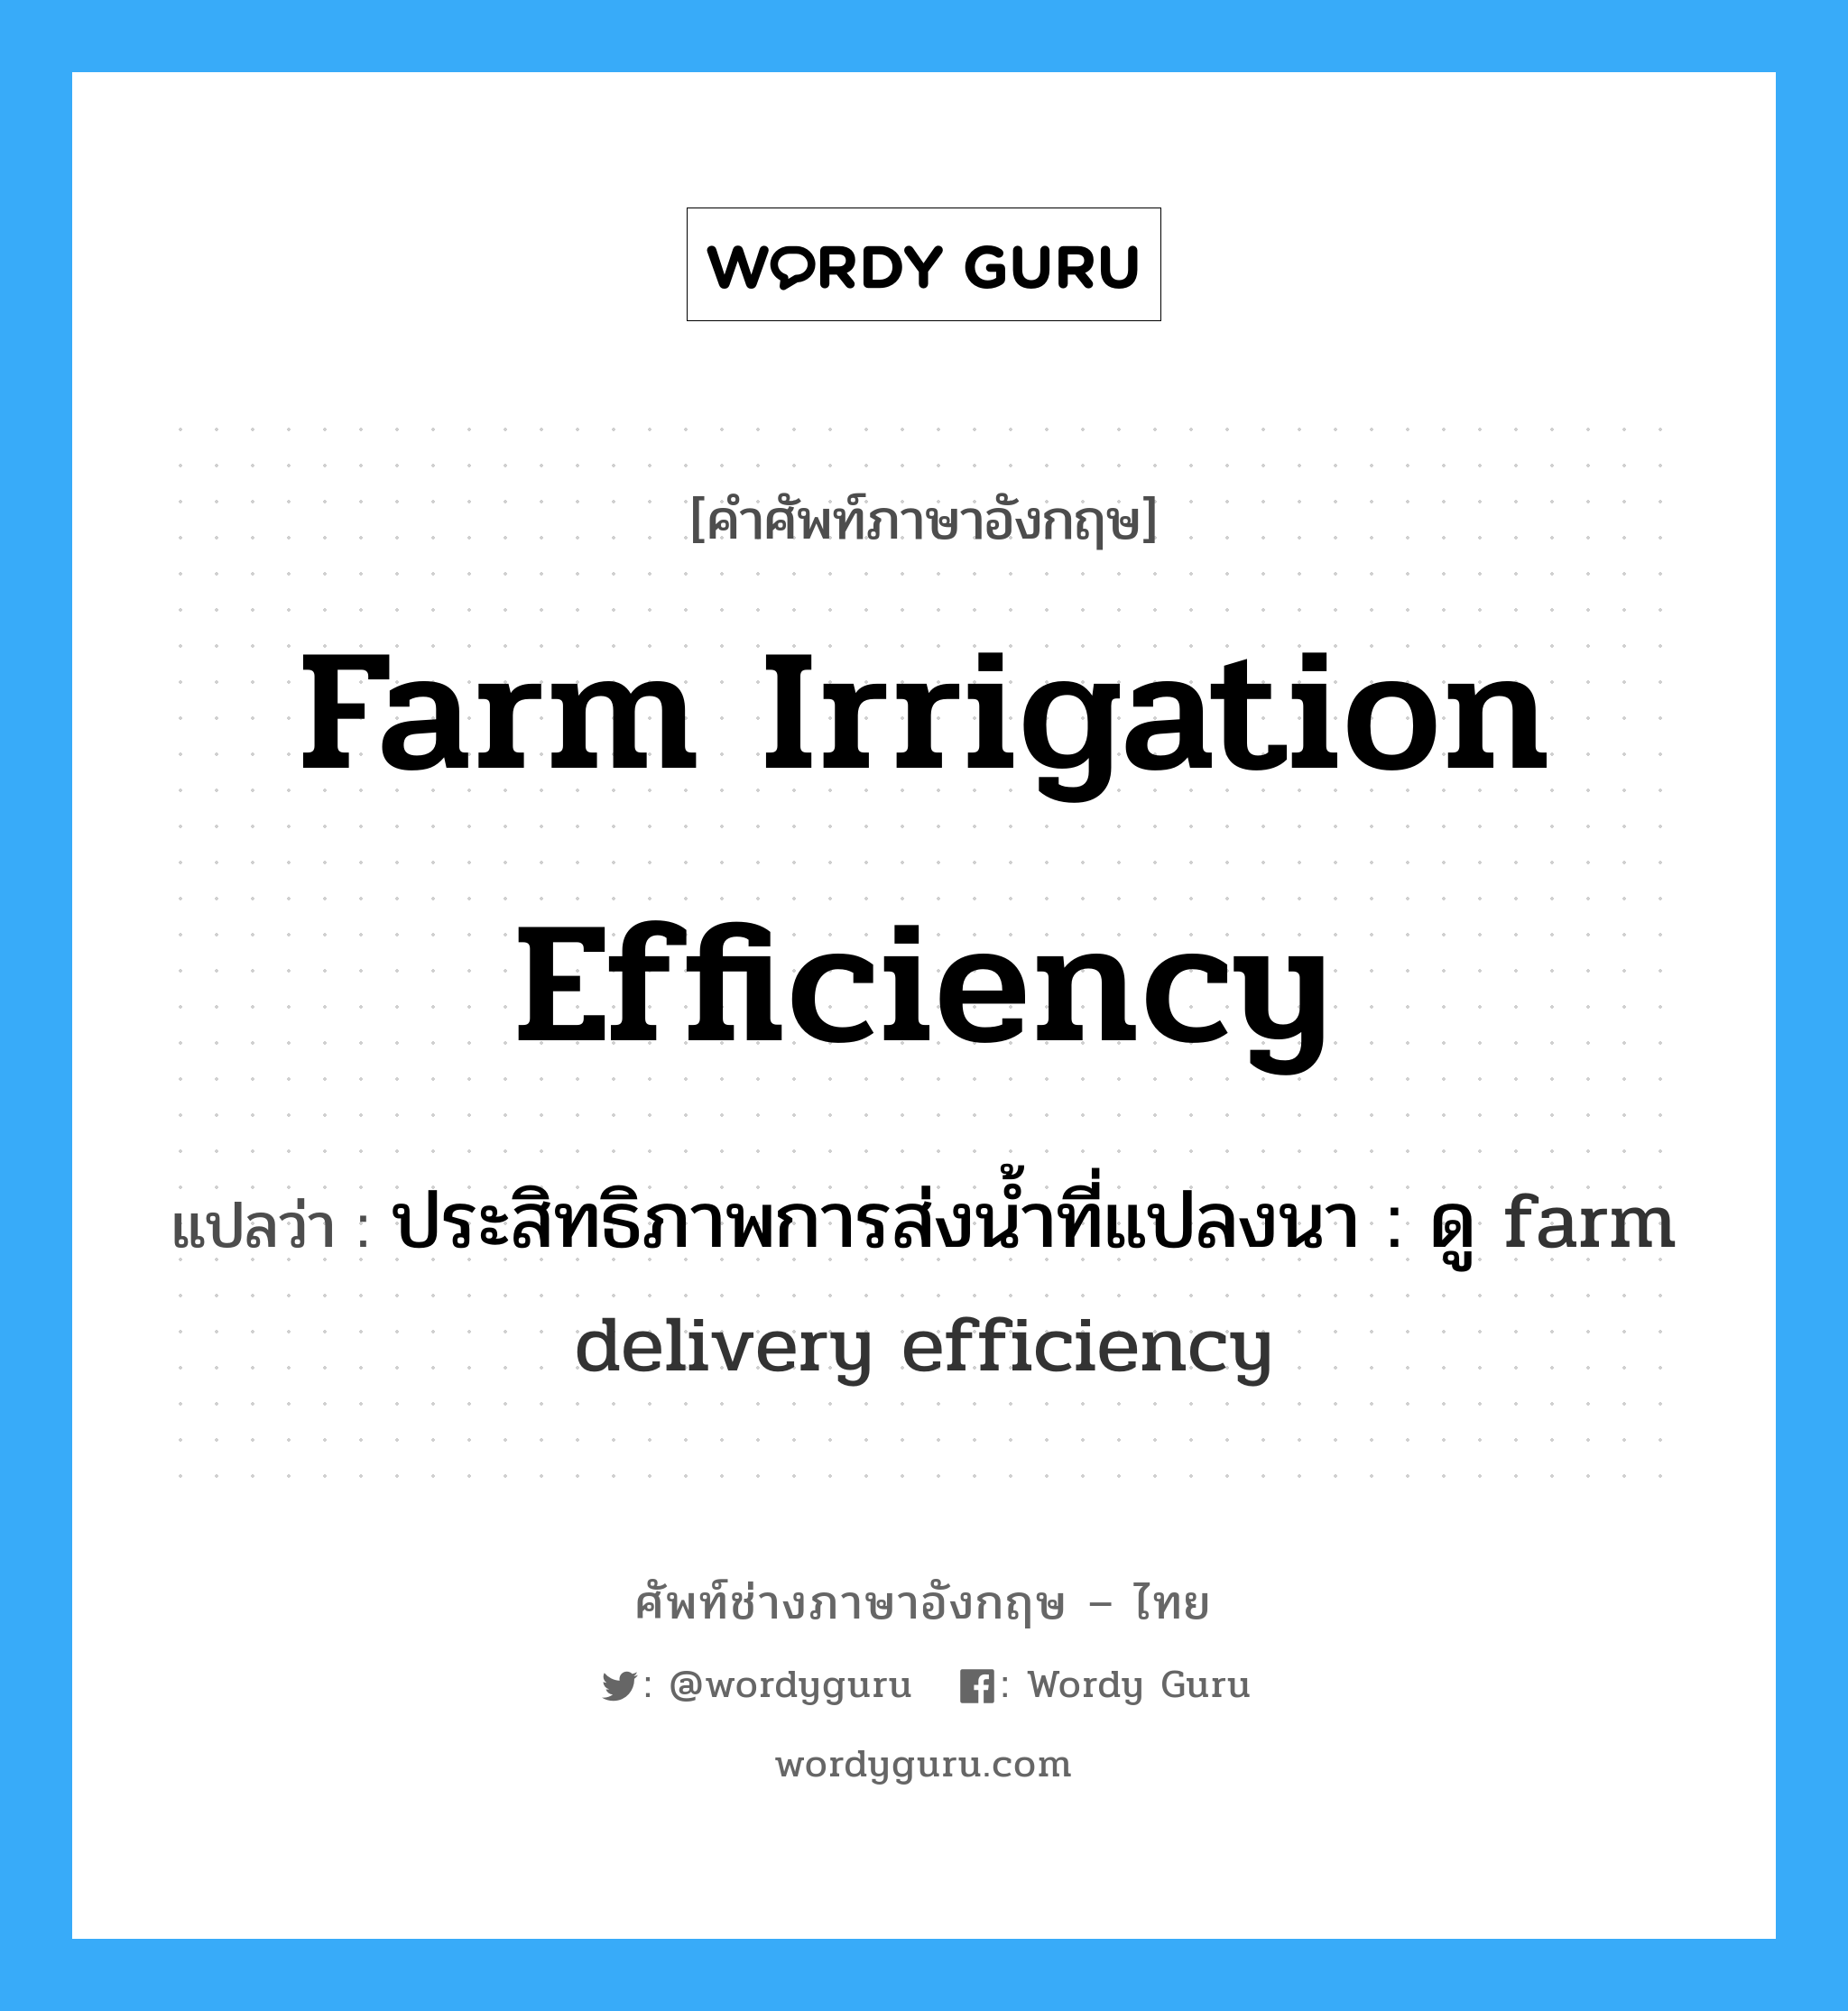 farm irrigation efficiency แปลว่า?, คำศัพท์ช่างภาษาอังกฤษ - ไทย farm irrigation efficiency คำศัพท์ภาษาอังกฤษ farm irrigation efficiency แปลว่า ประสิทธิภาพการส่งน้ำที่แปลงนา : ดู farm delivery efficiency